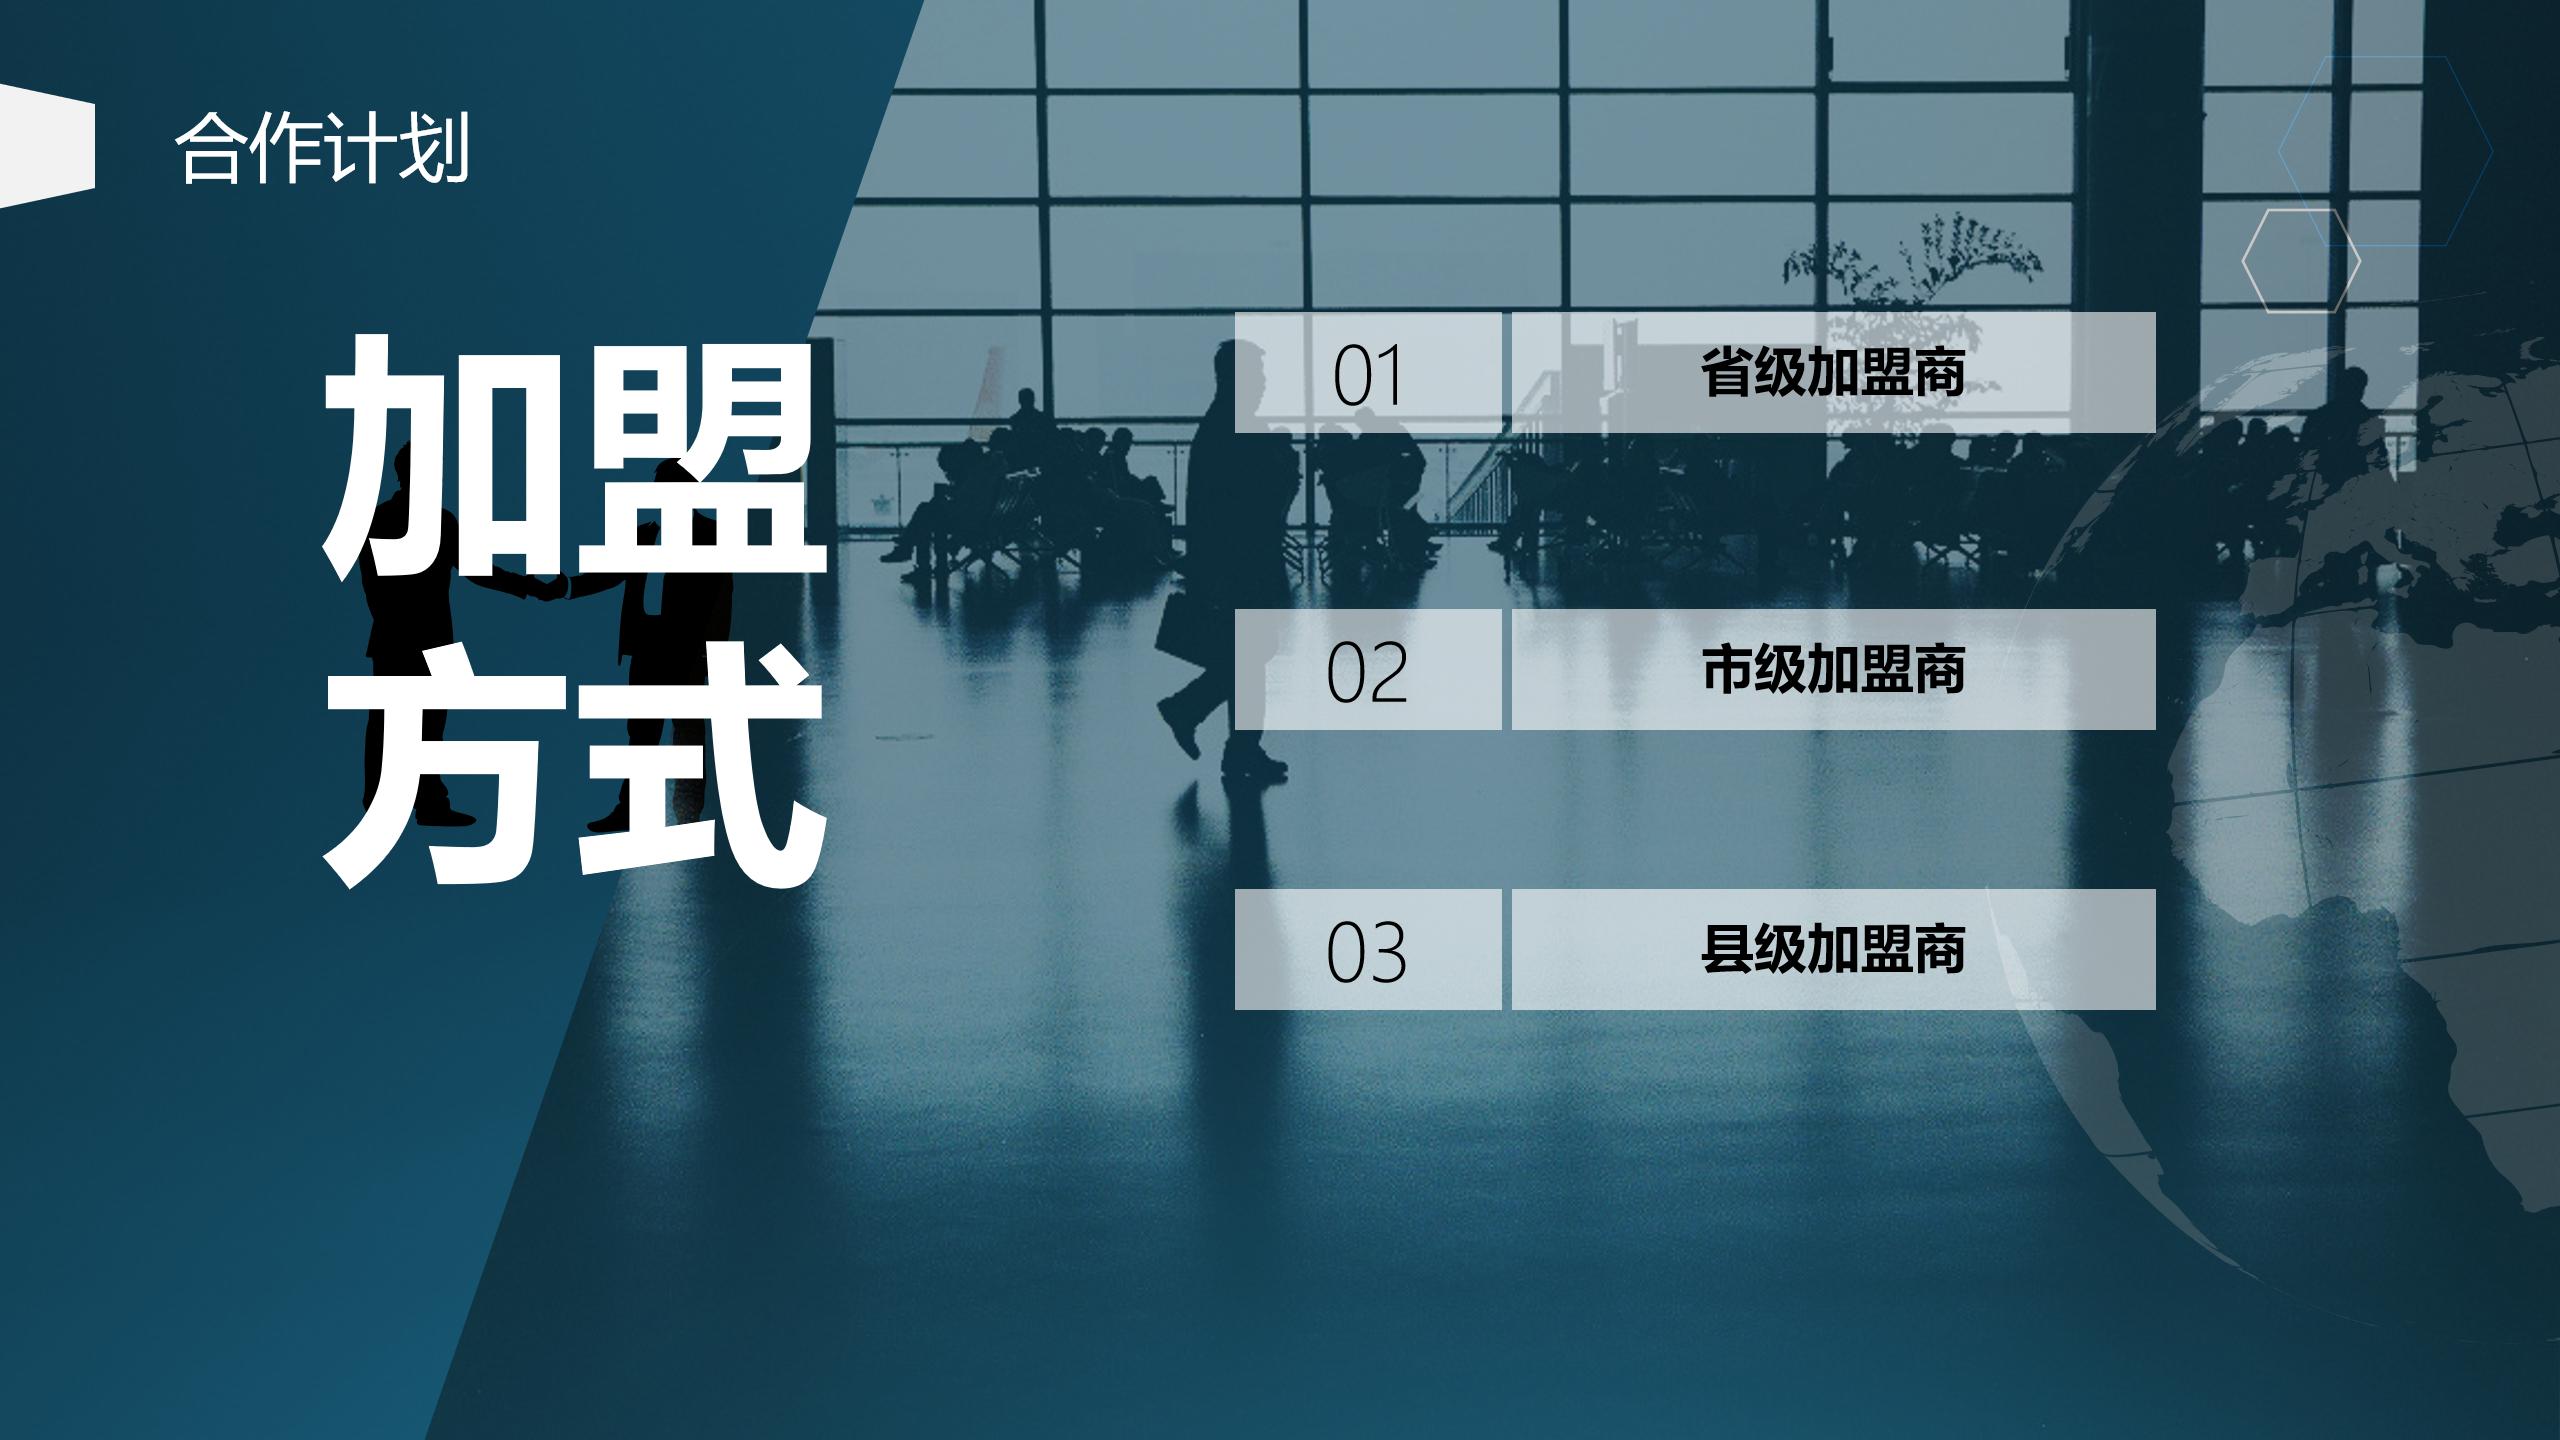 网站用上海博桥留学加盟说明 - 副本_14.jpg